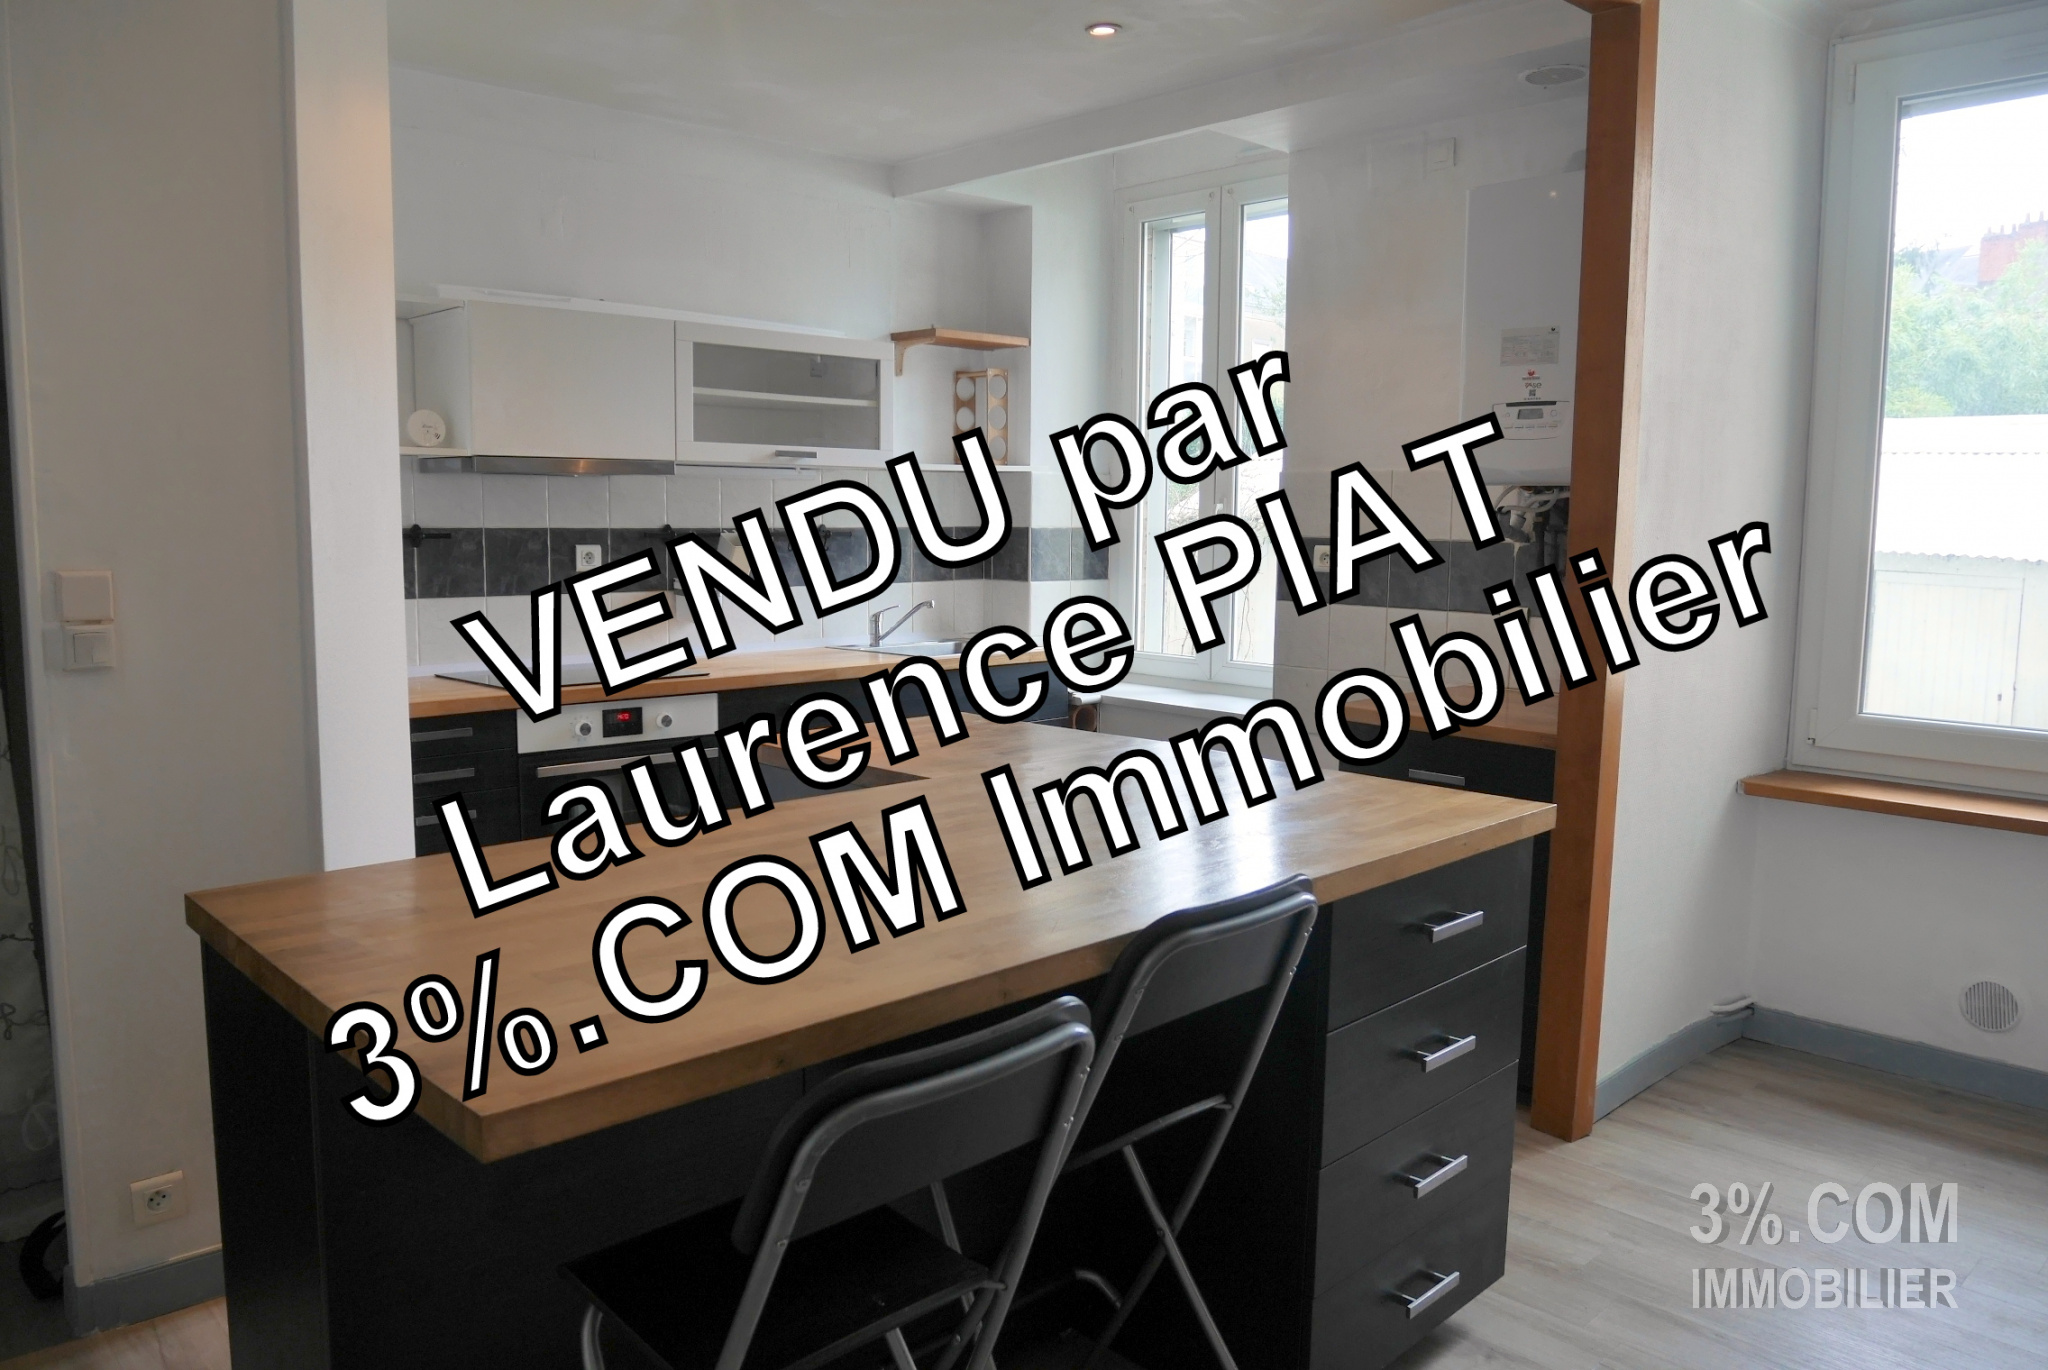 Vente Appartement 66m² 3 Pièces à Nantes (44000) - 3%.Com